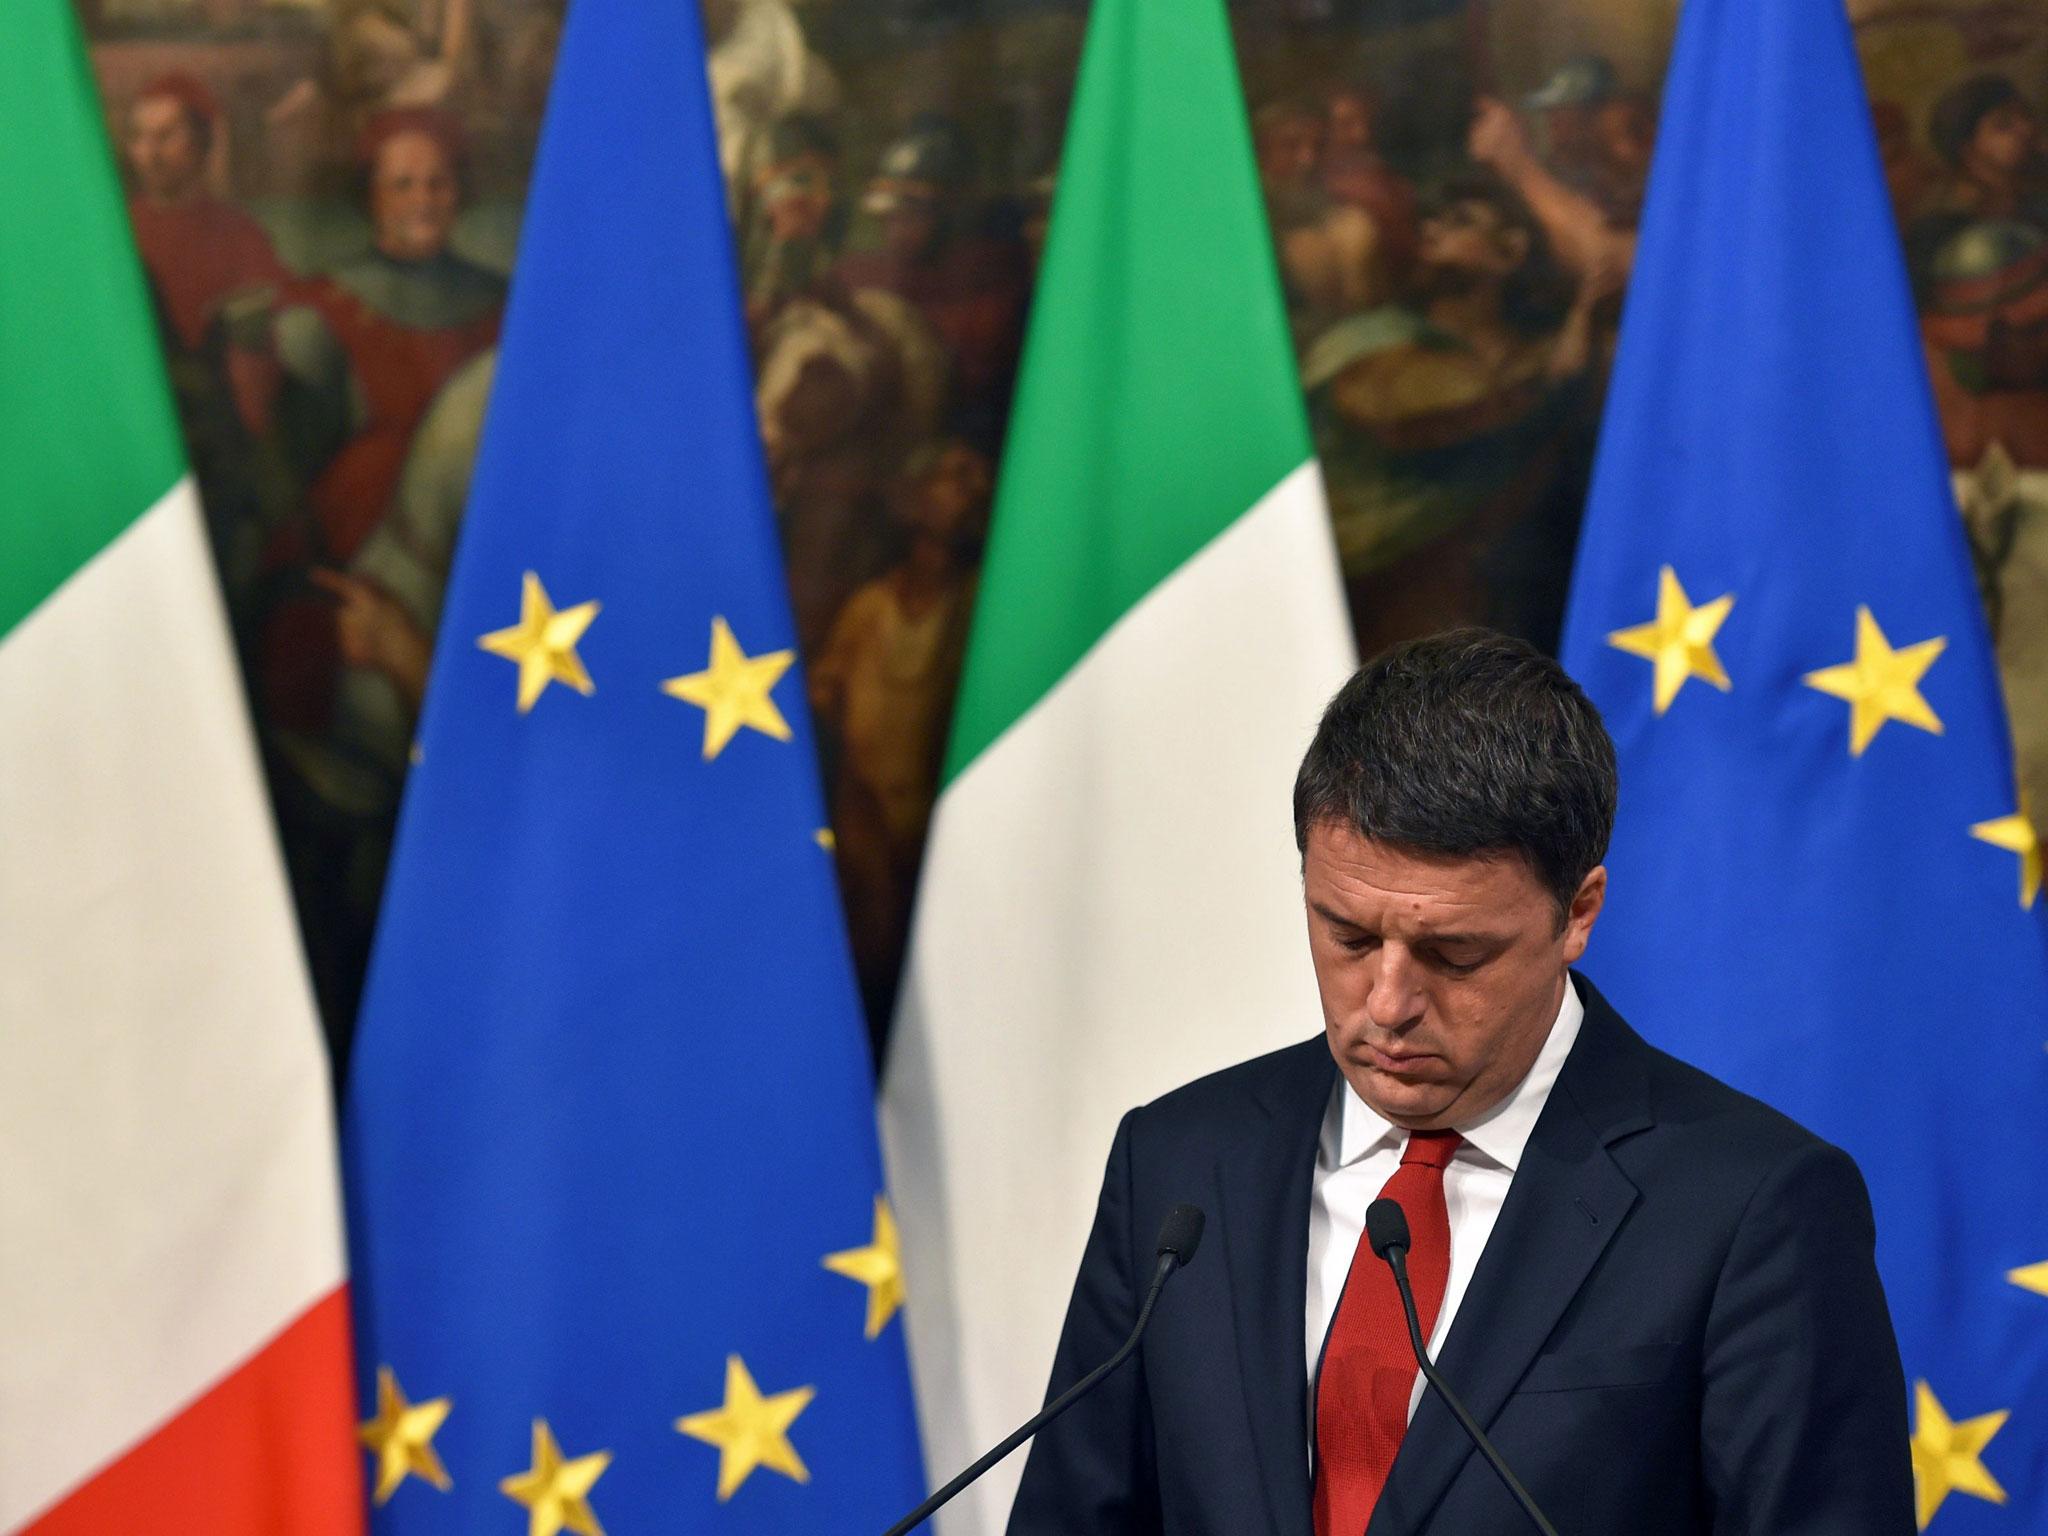 It's a big moment for Matteo Renzi